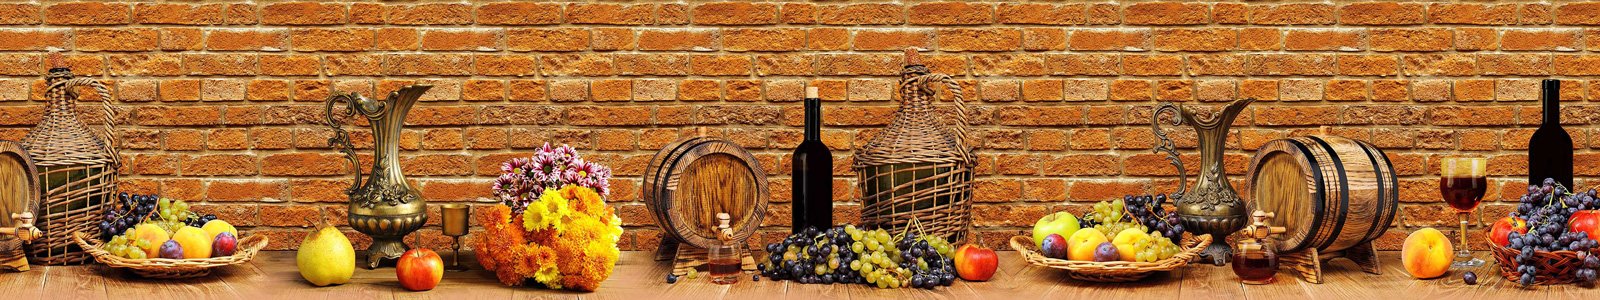 №6904 - Фрукты и вино на столе